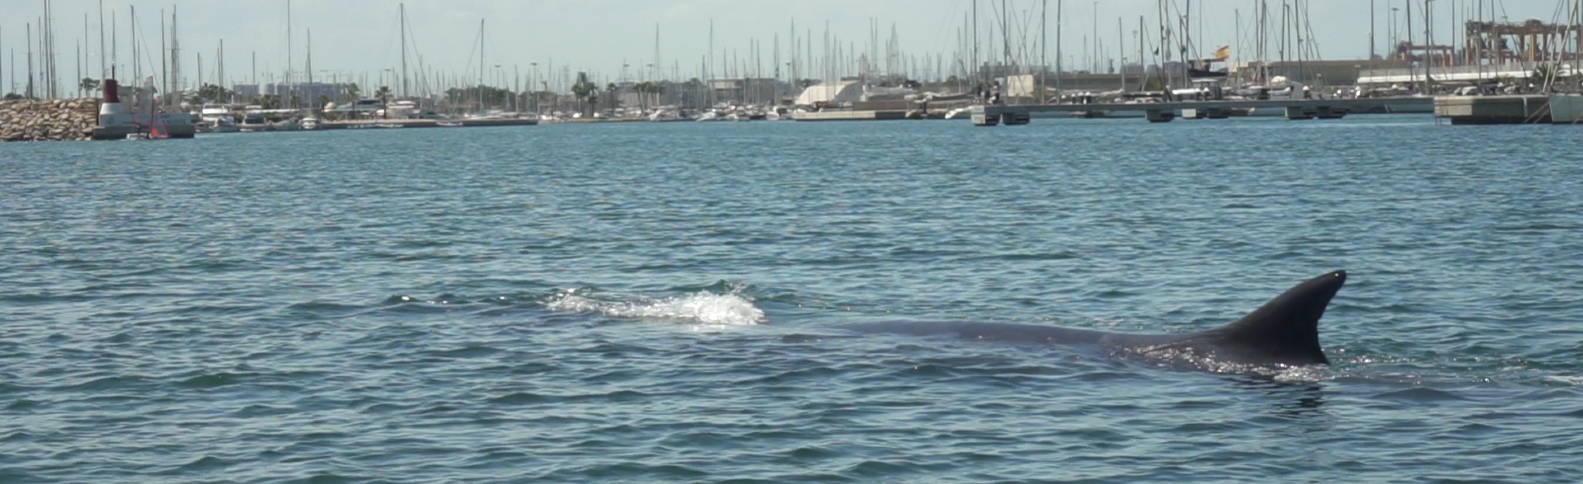 Devuelven a mar abierto a una ballena de 18 metros desorientada